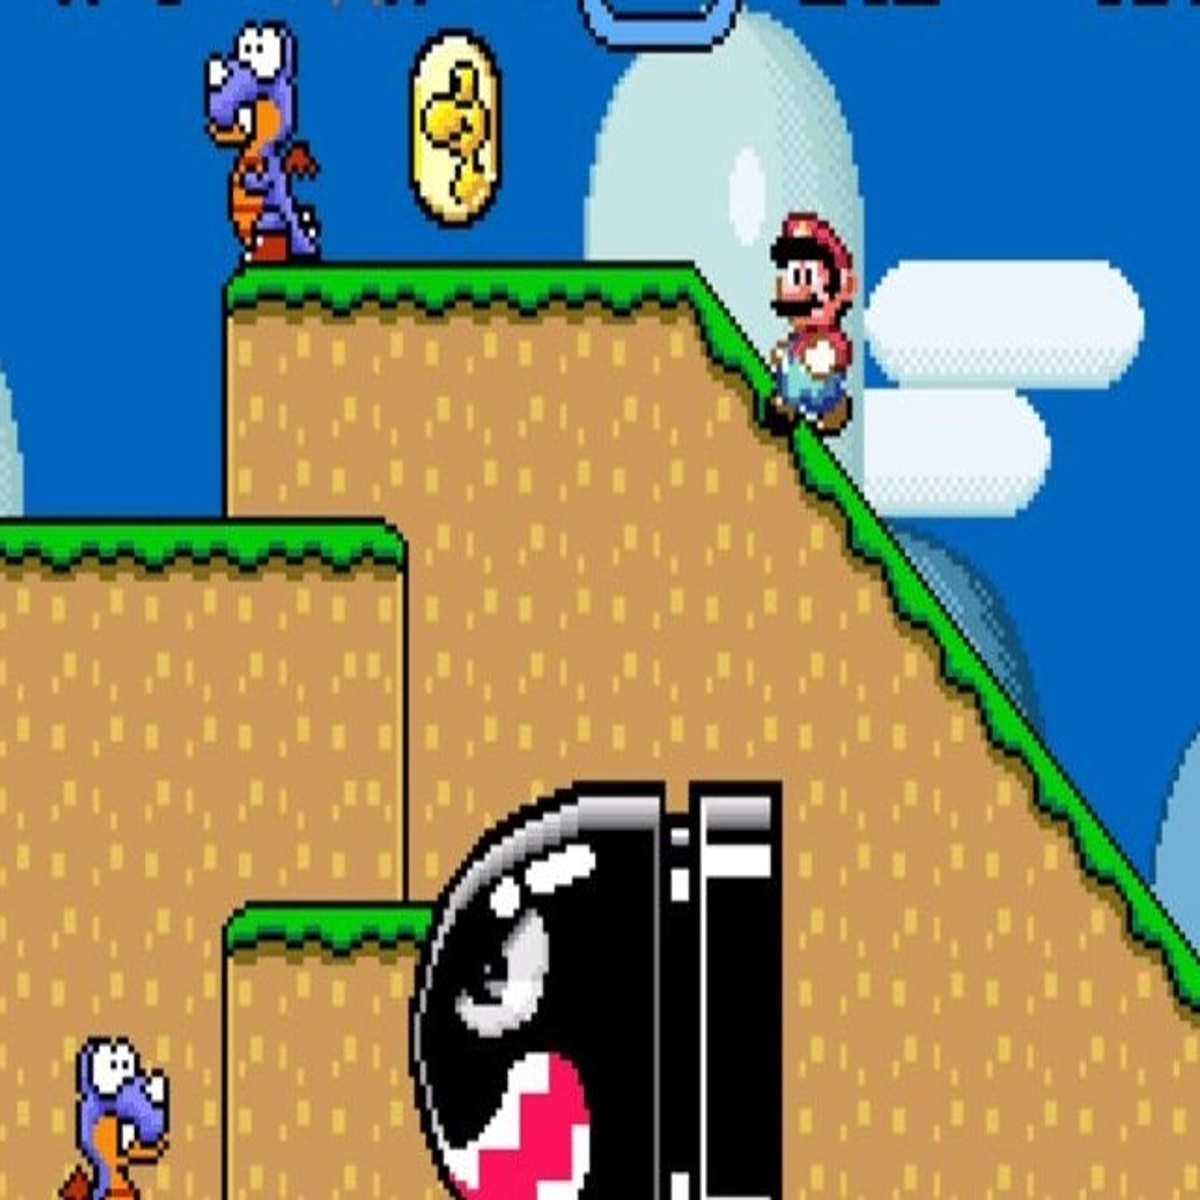 Glitch em Super Mario World permite finalização rápida do jogo - Canaltech